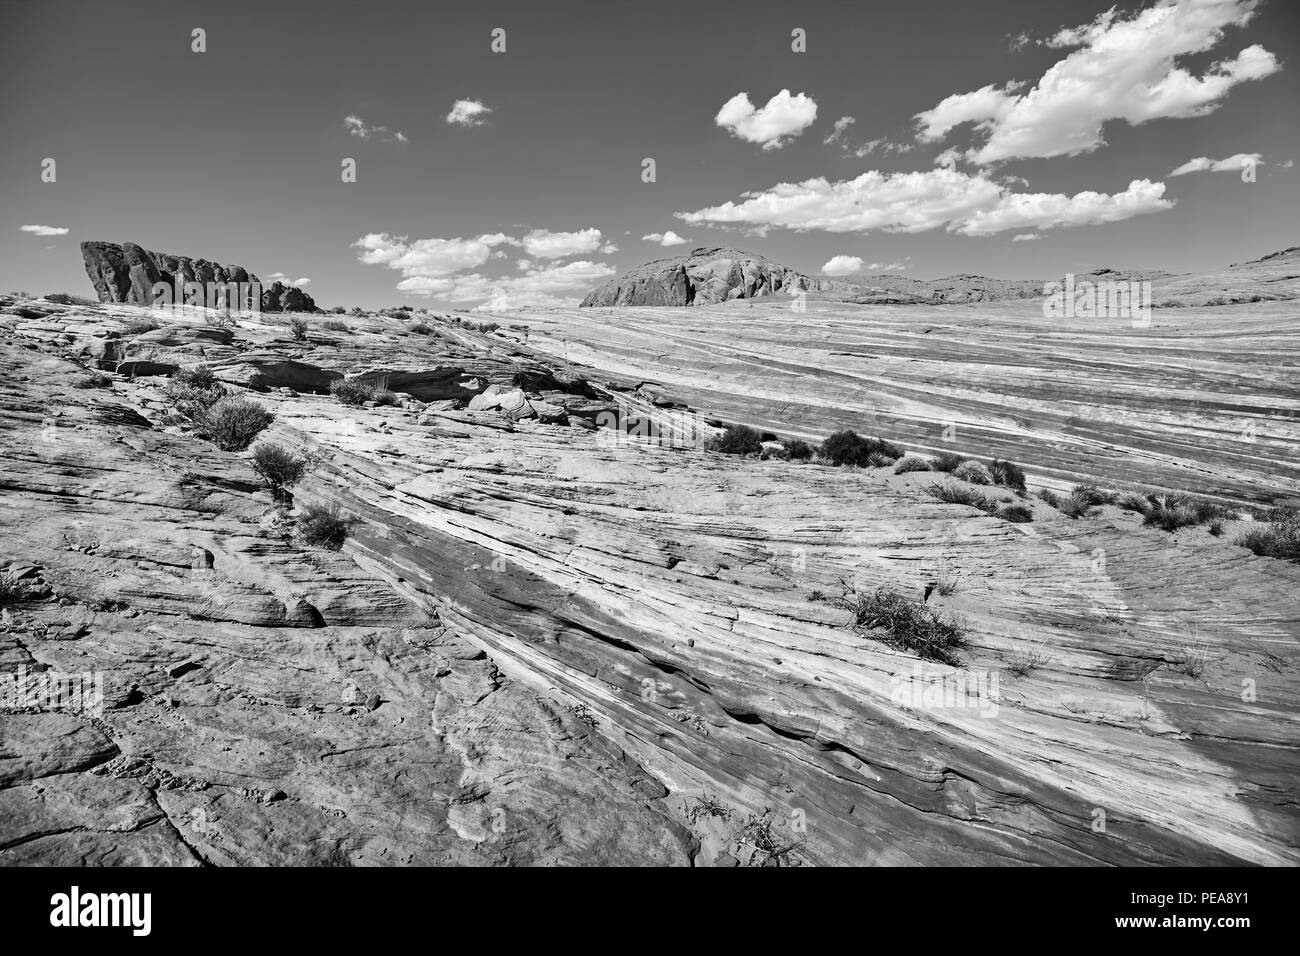 De belles formations rocheuses dans le parc national de la Vallée de Feu, Nevada, USA. Banque D'Images